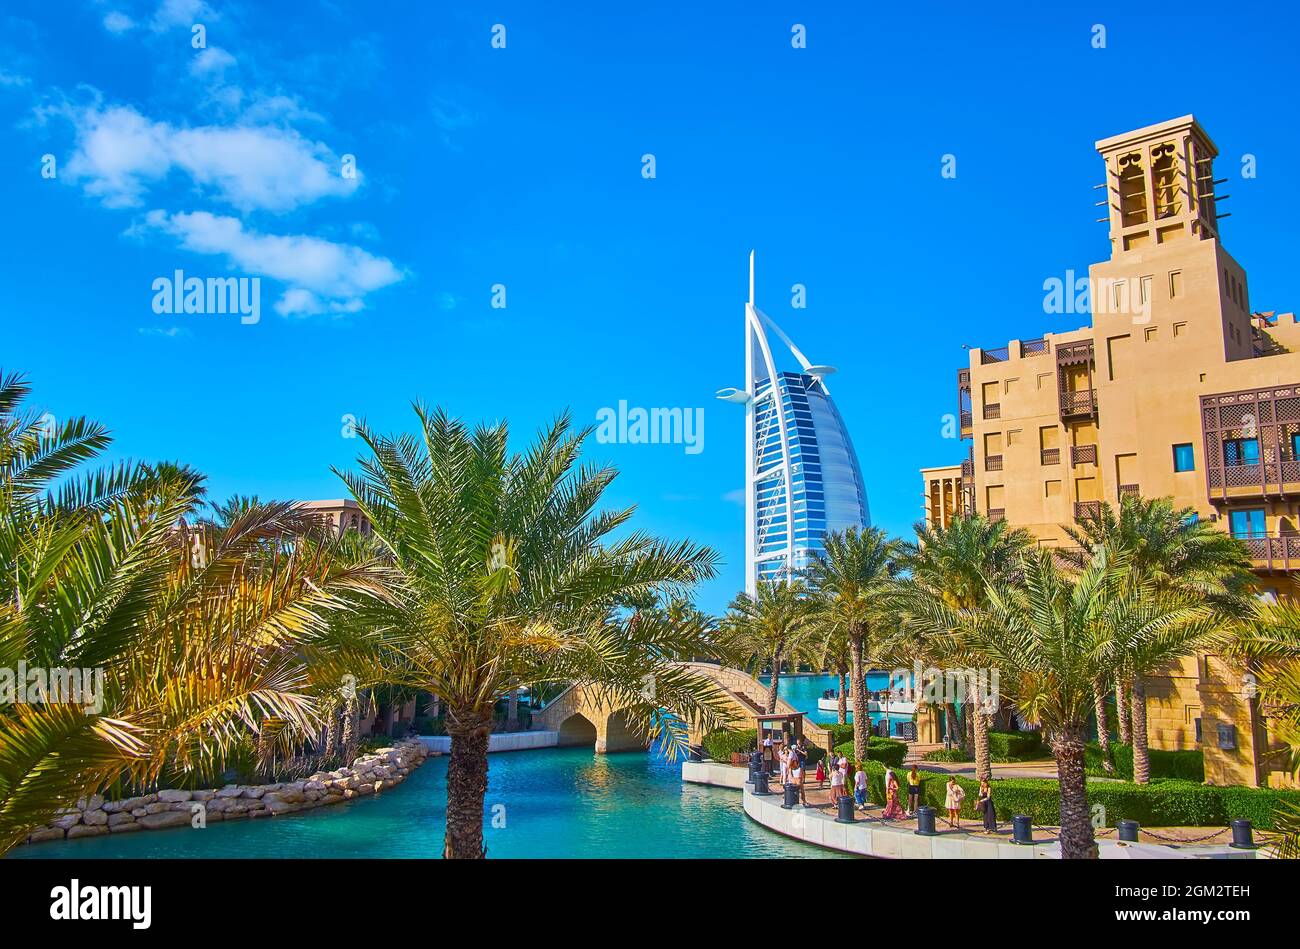 Les ruelles vertes, qui s'étendent le long des canaux du marché Souk Madinat Jumeirah, sont parfaites pour observer Burj al Arab, Dubaï, Émirats Arabes Unis Banque D'Images